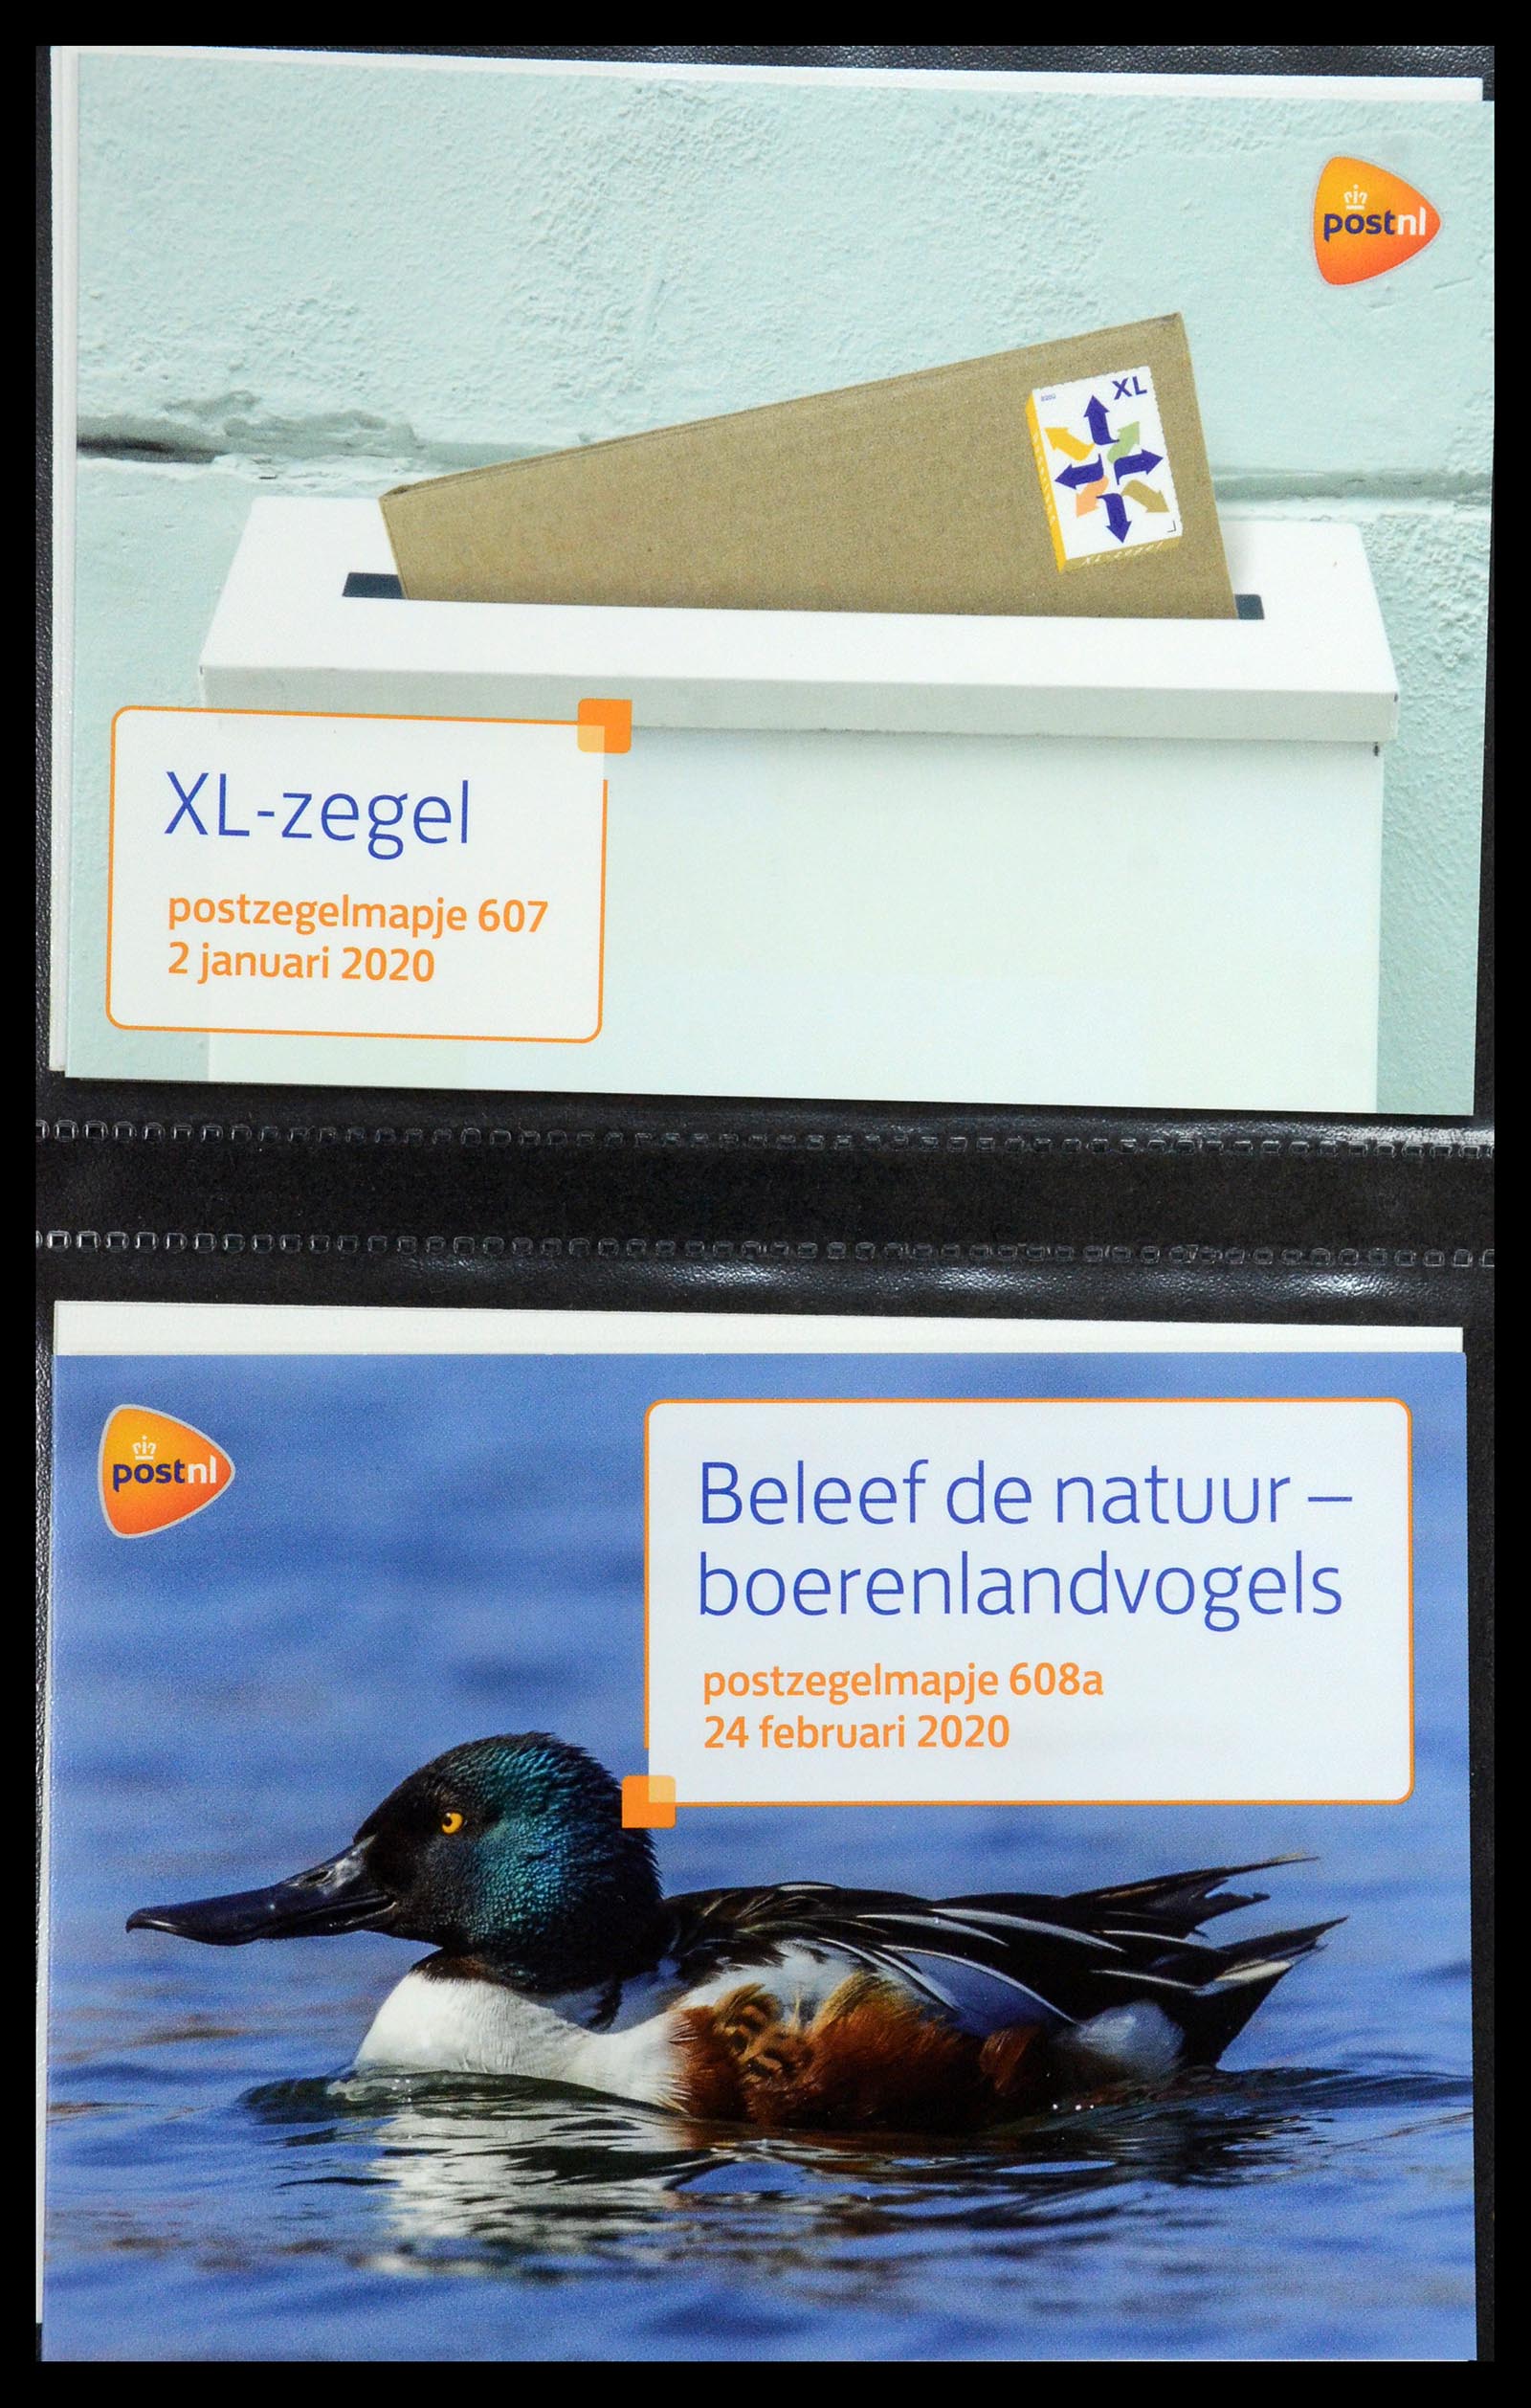 35144 368 - Stamp Collection 35144 Netherlands PTT presentation packs 1982-2021!